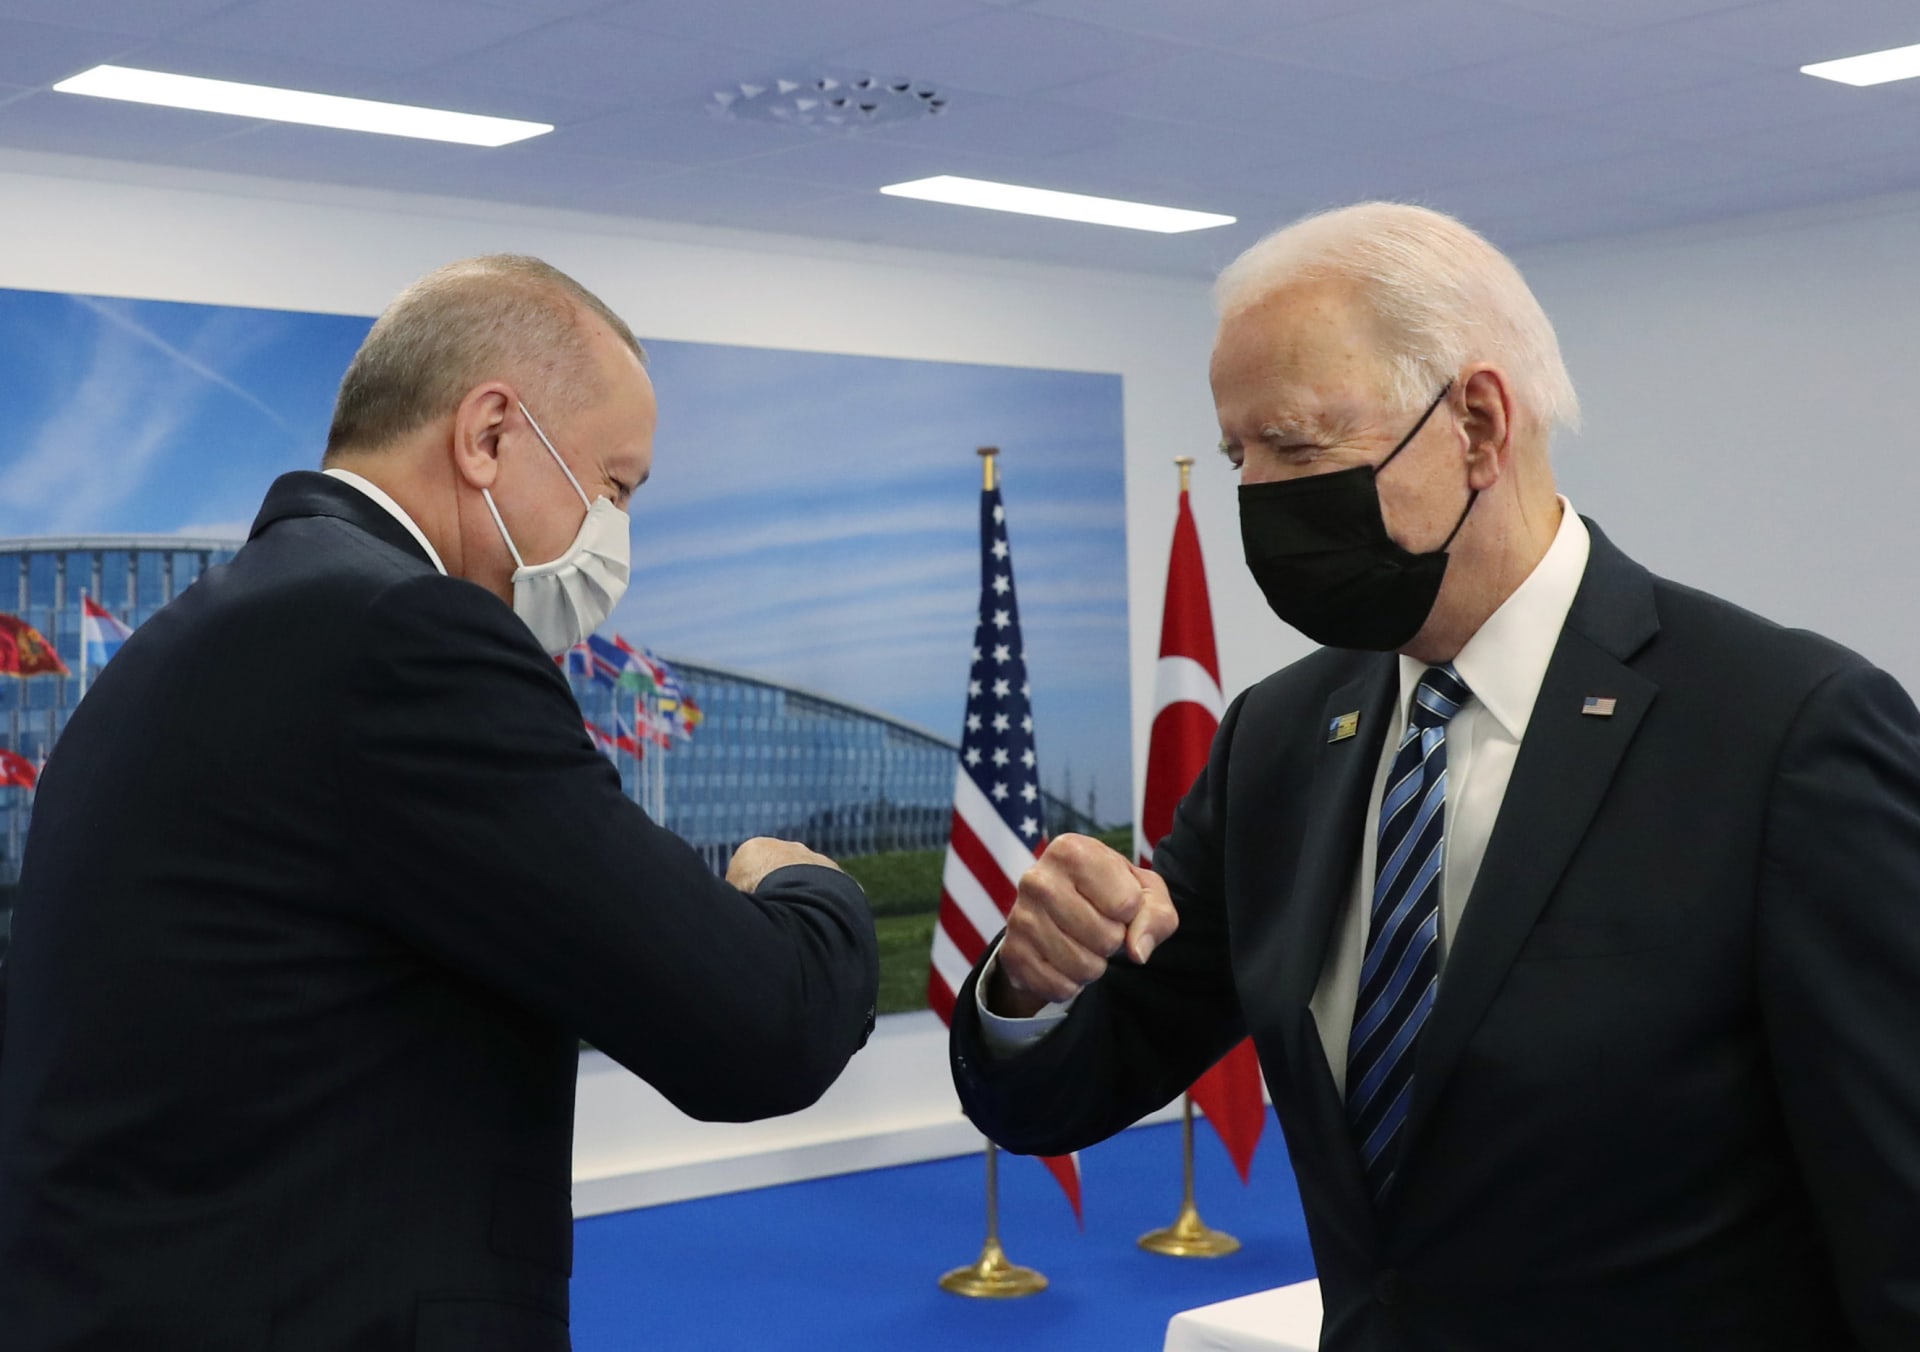  الرئيس الأمريكي جو بايدن ونظيره التركي رجب طيب أردوغان